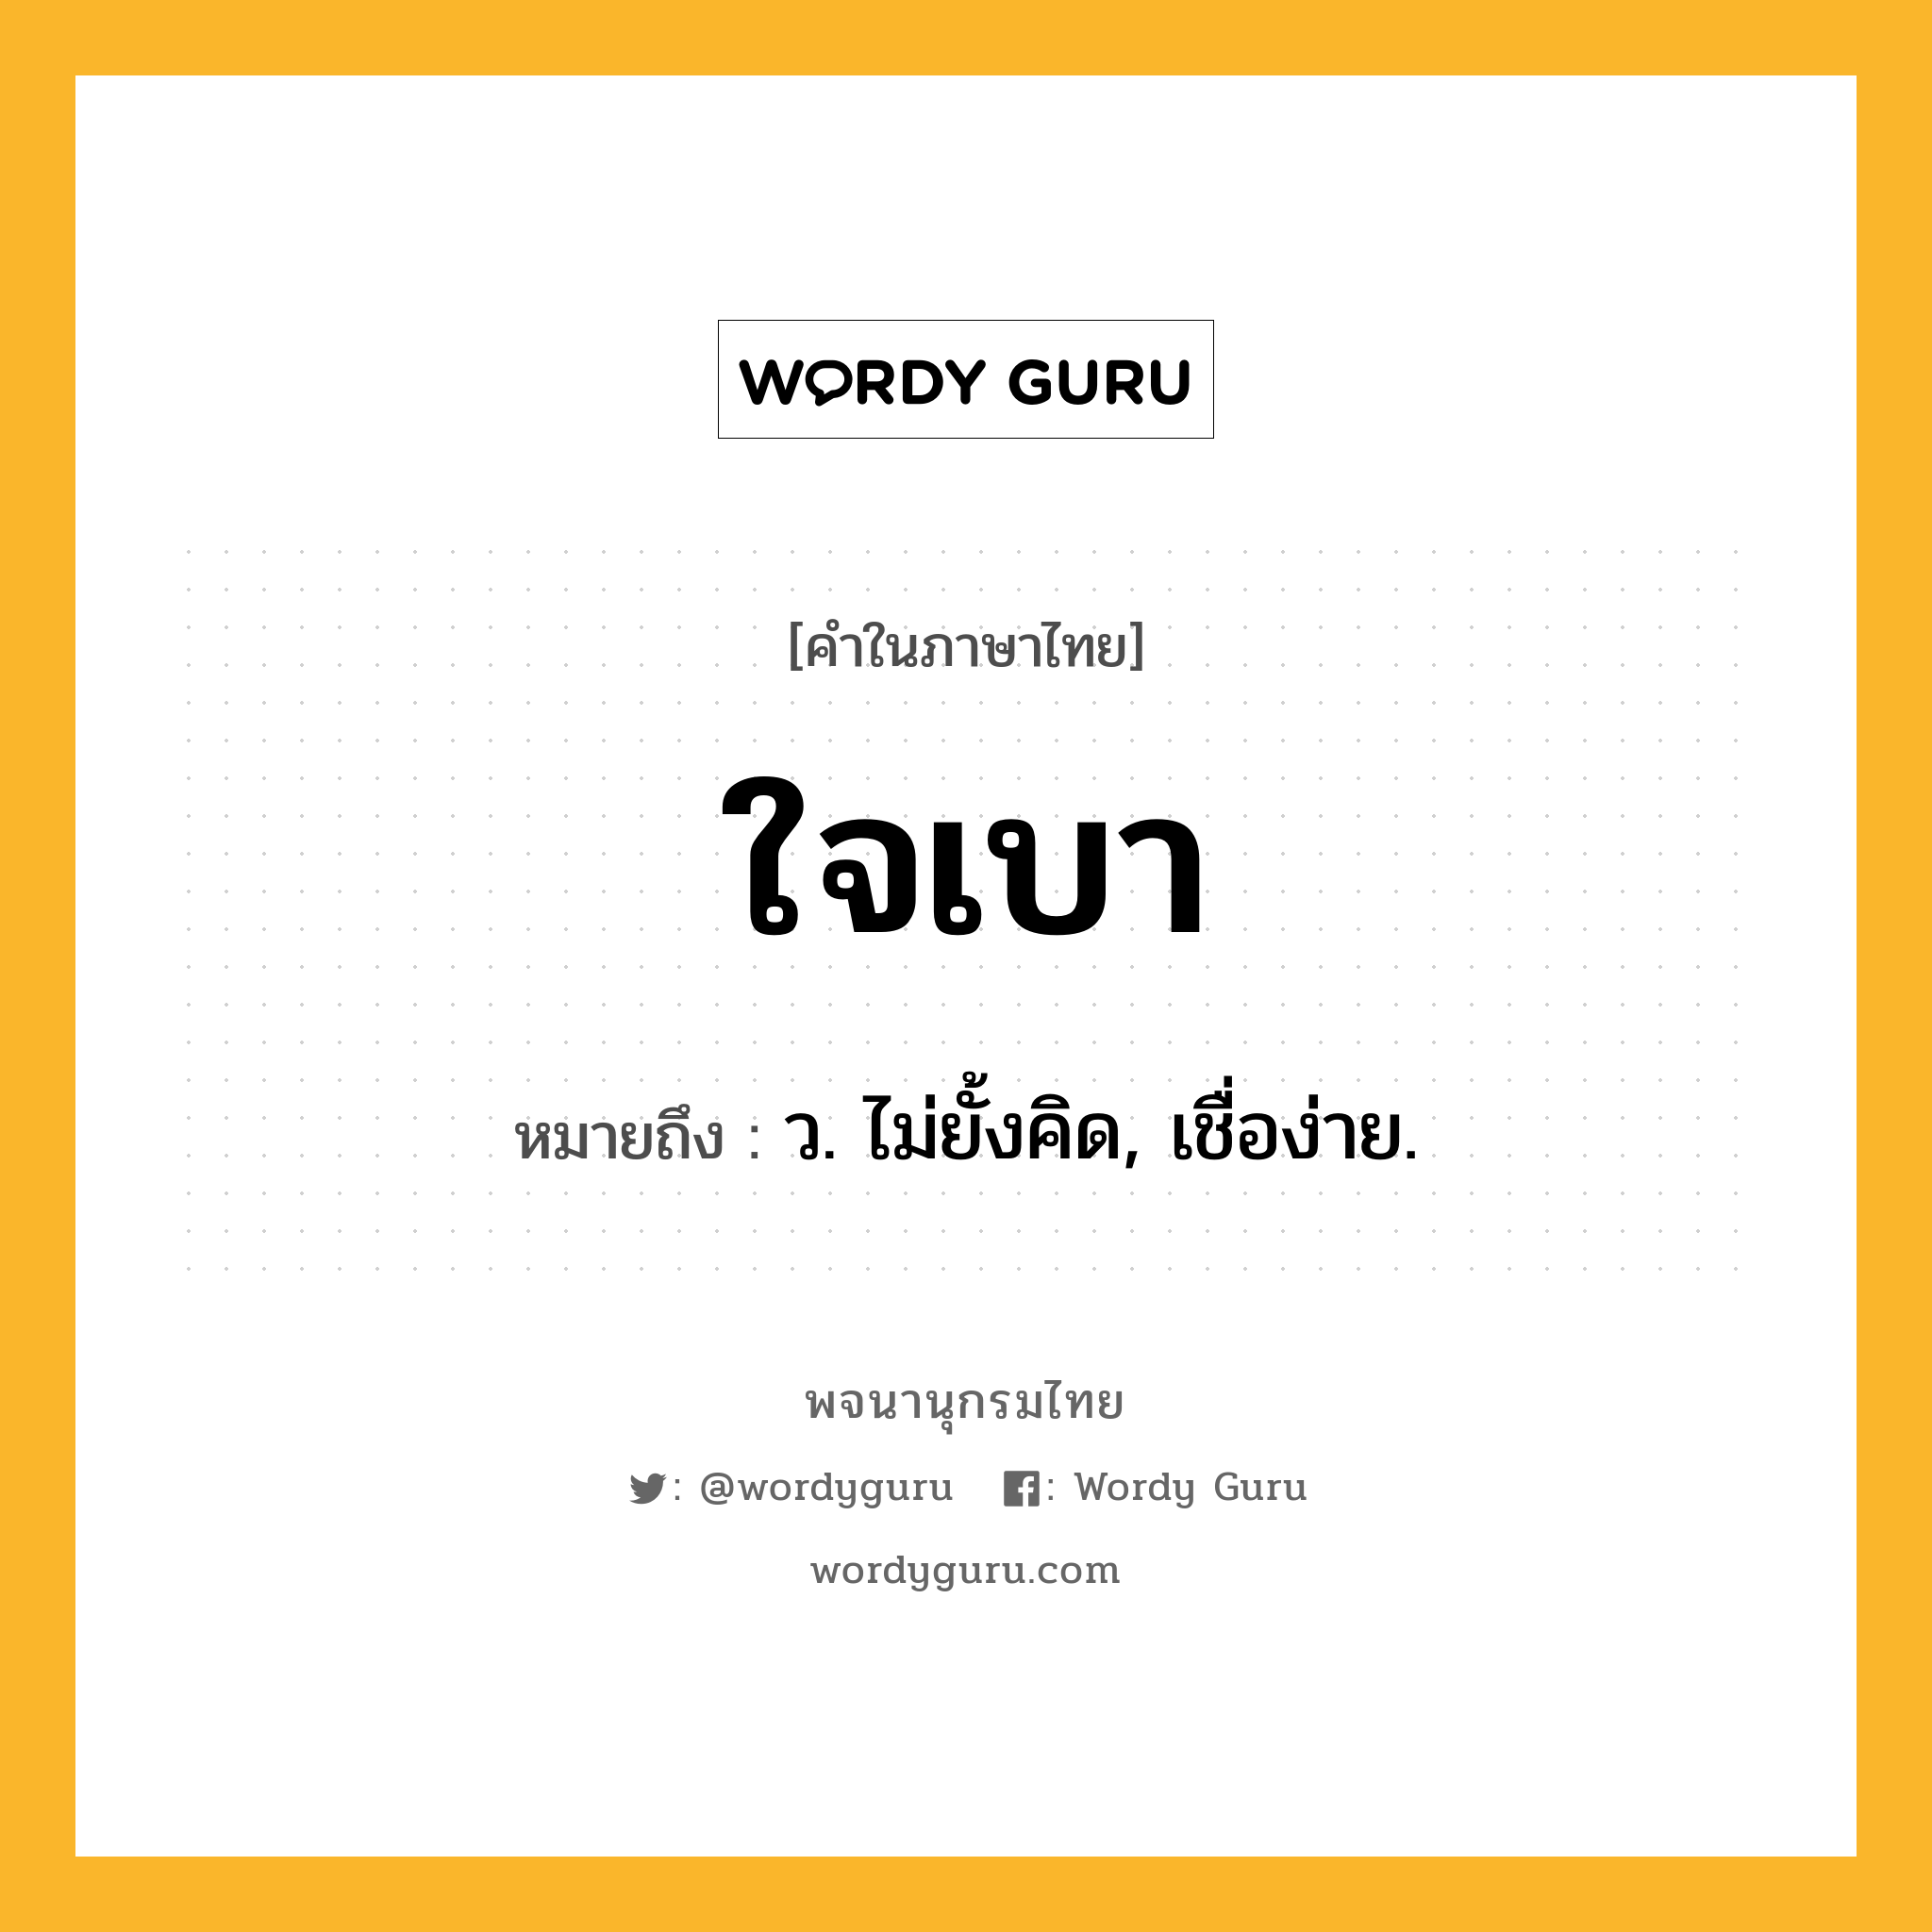 ใจเบา หมายถึงอะไร?, คำในภาษาไทย ใจเบา หมายถึง ว. ไม่ยั้งคิด, เชื่อง่าย.